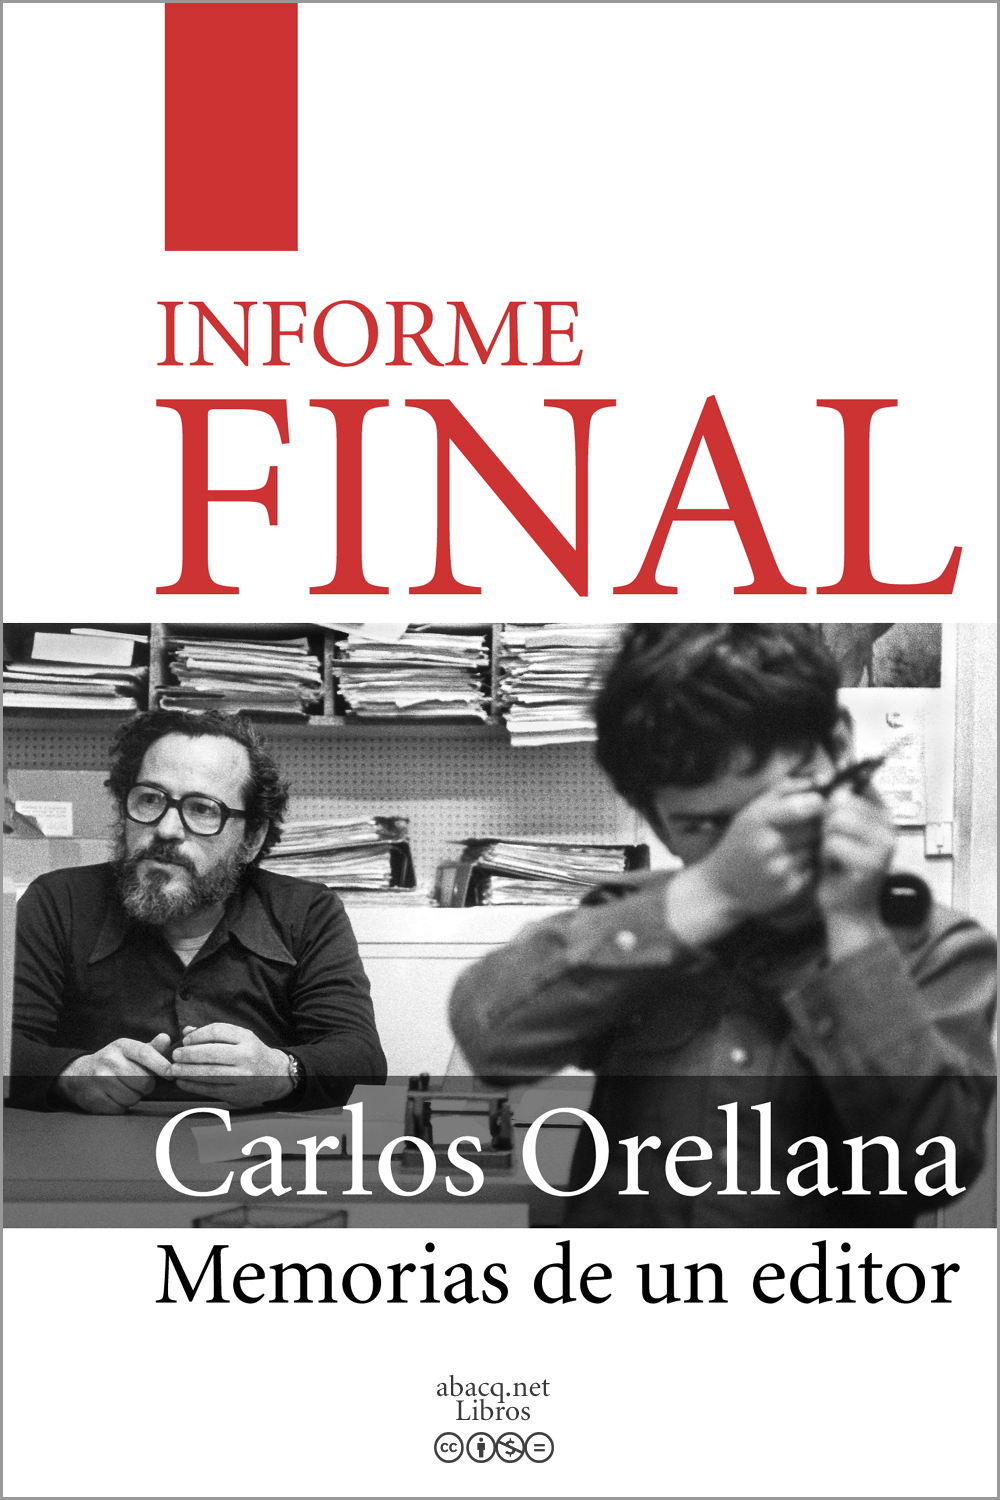 A Yerko Moretic amigo y hermano Informe final Memorias de un editor Carlos - photo 2